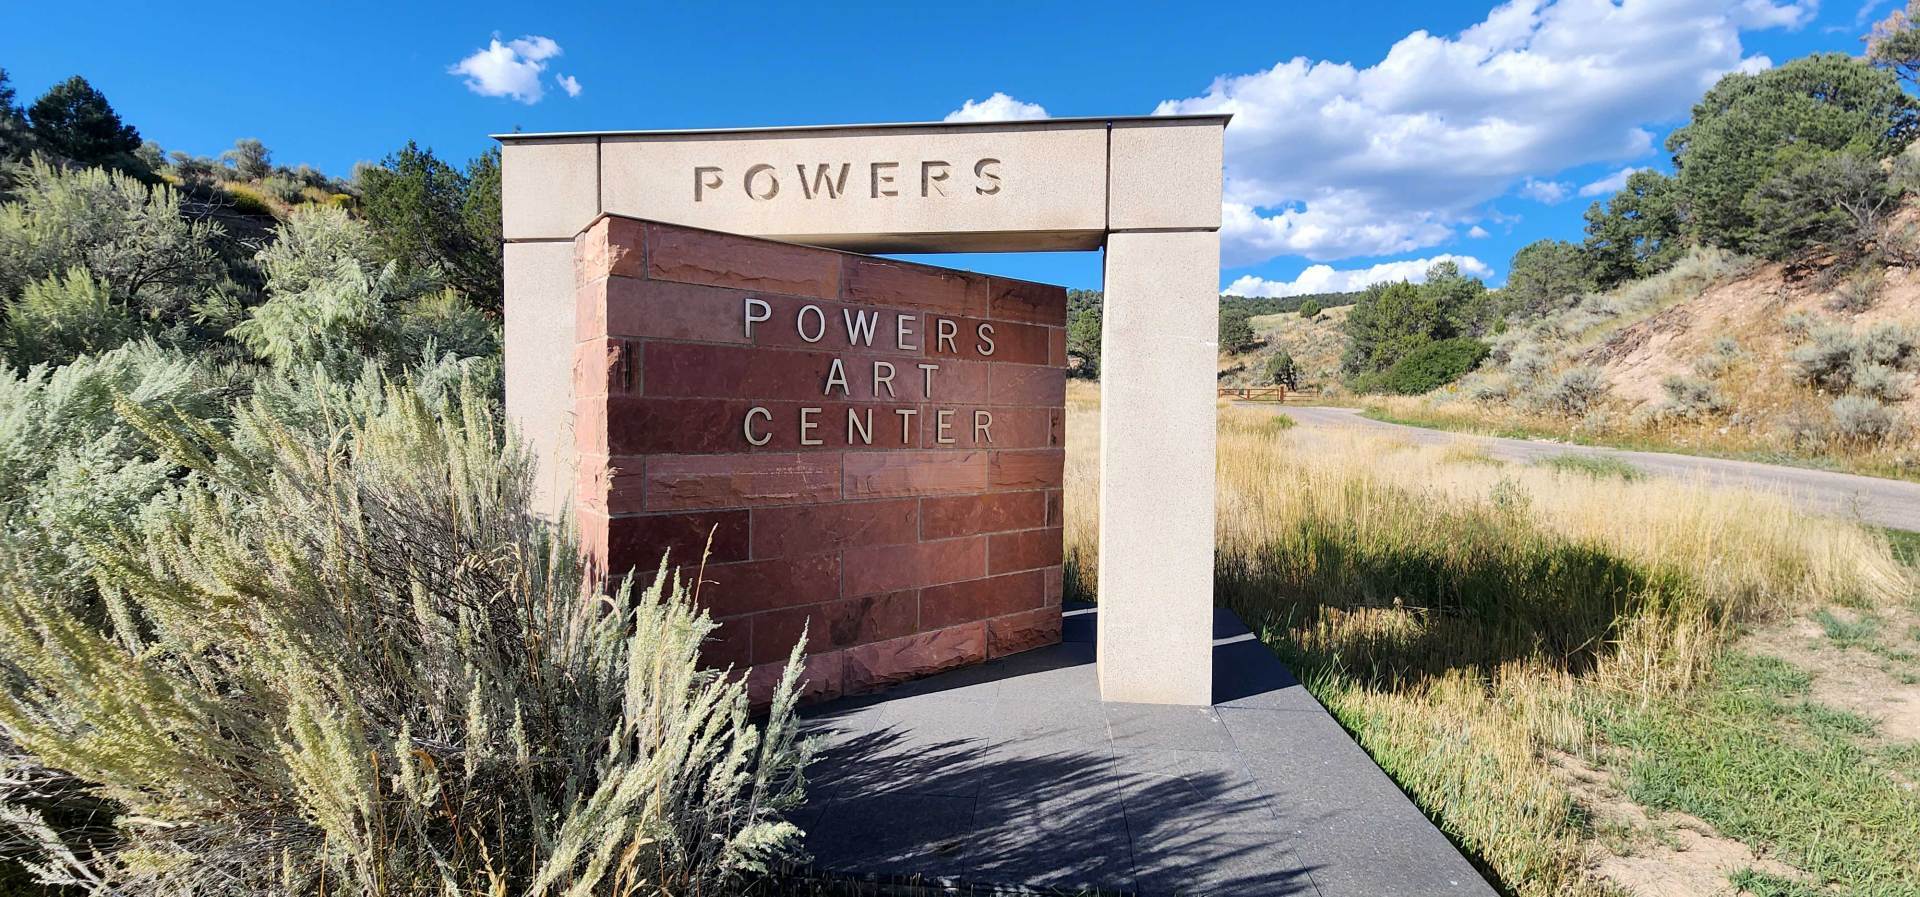 Powers Art Center